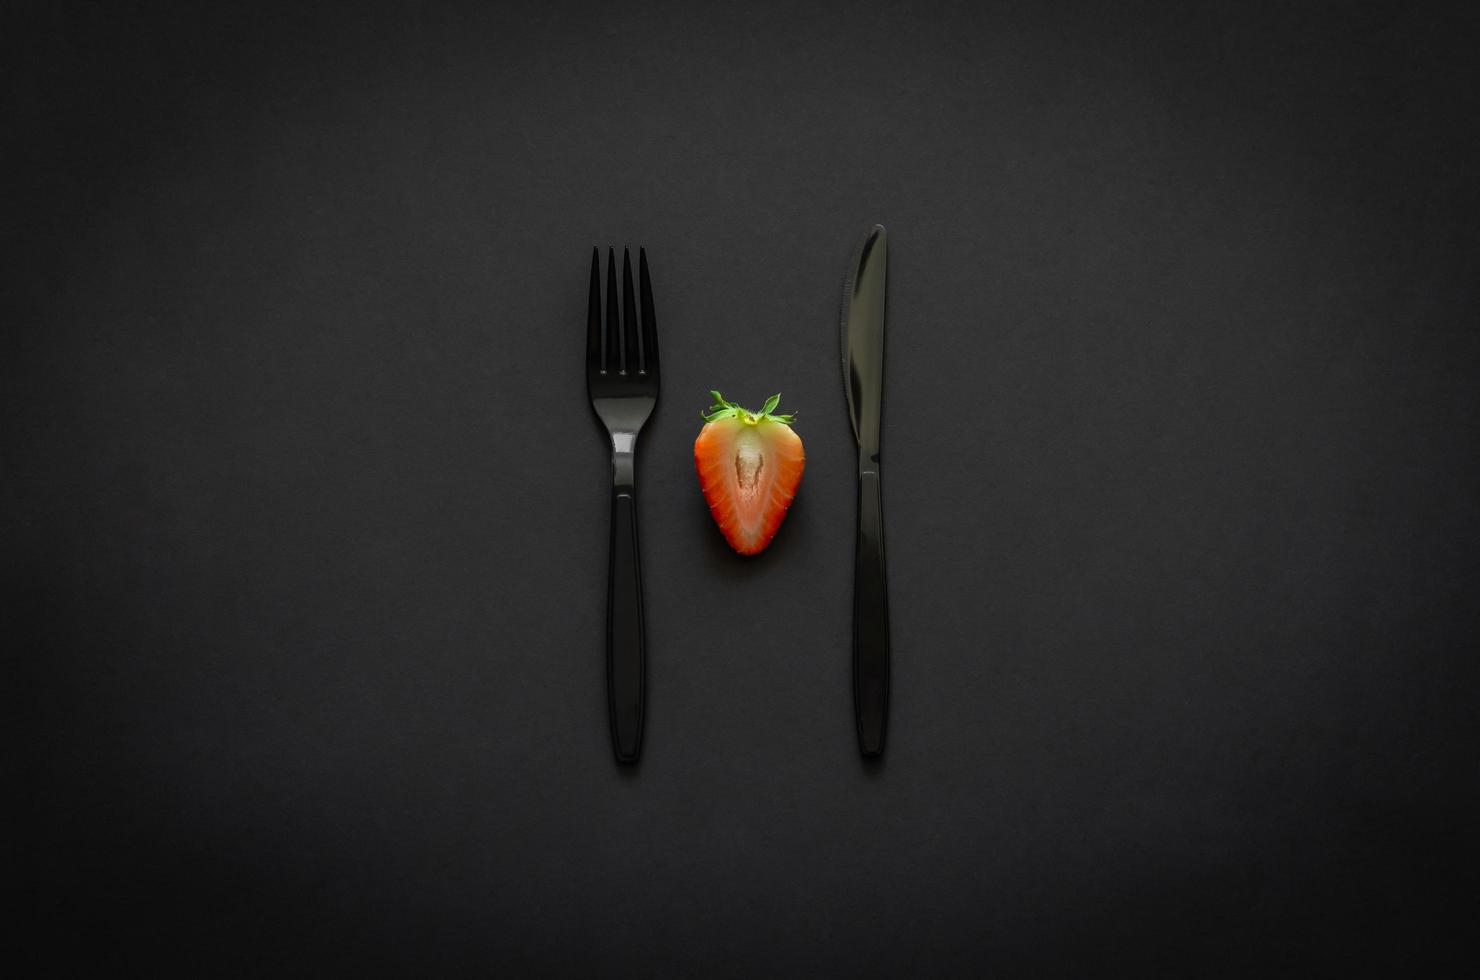 couper la fraise avec une fourchette et un couteau sur fond sombre pour un concept minimaliste de nourriture noire à plat. photo